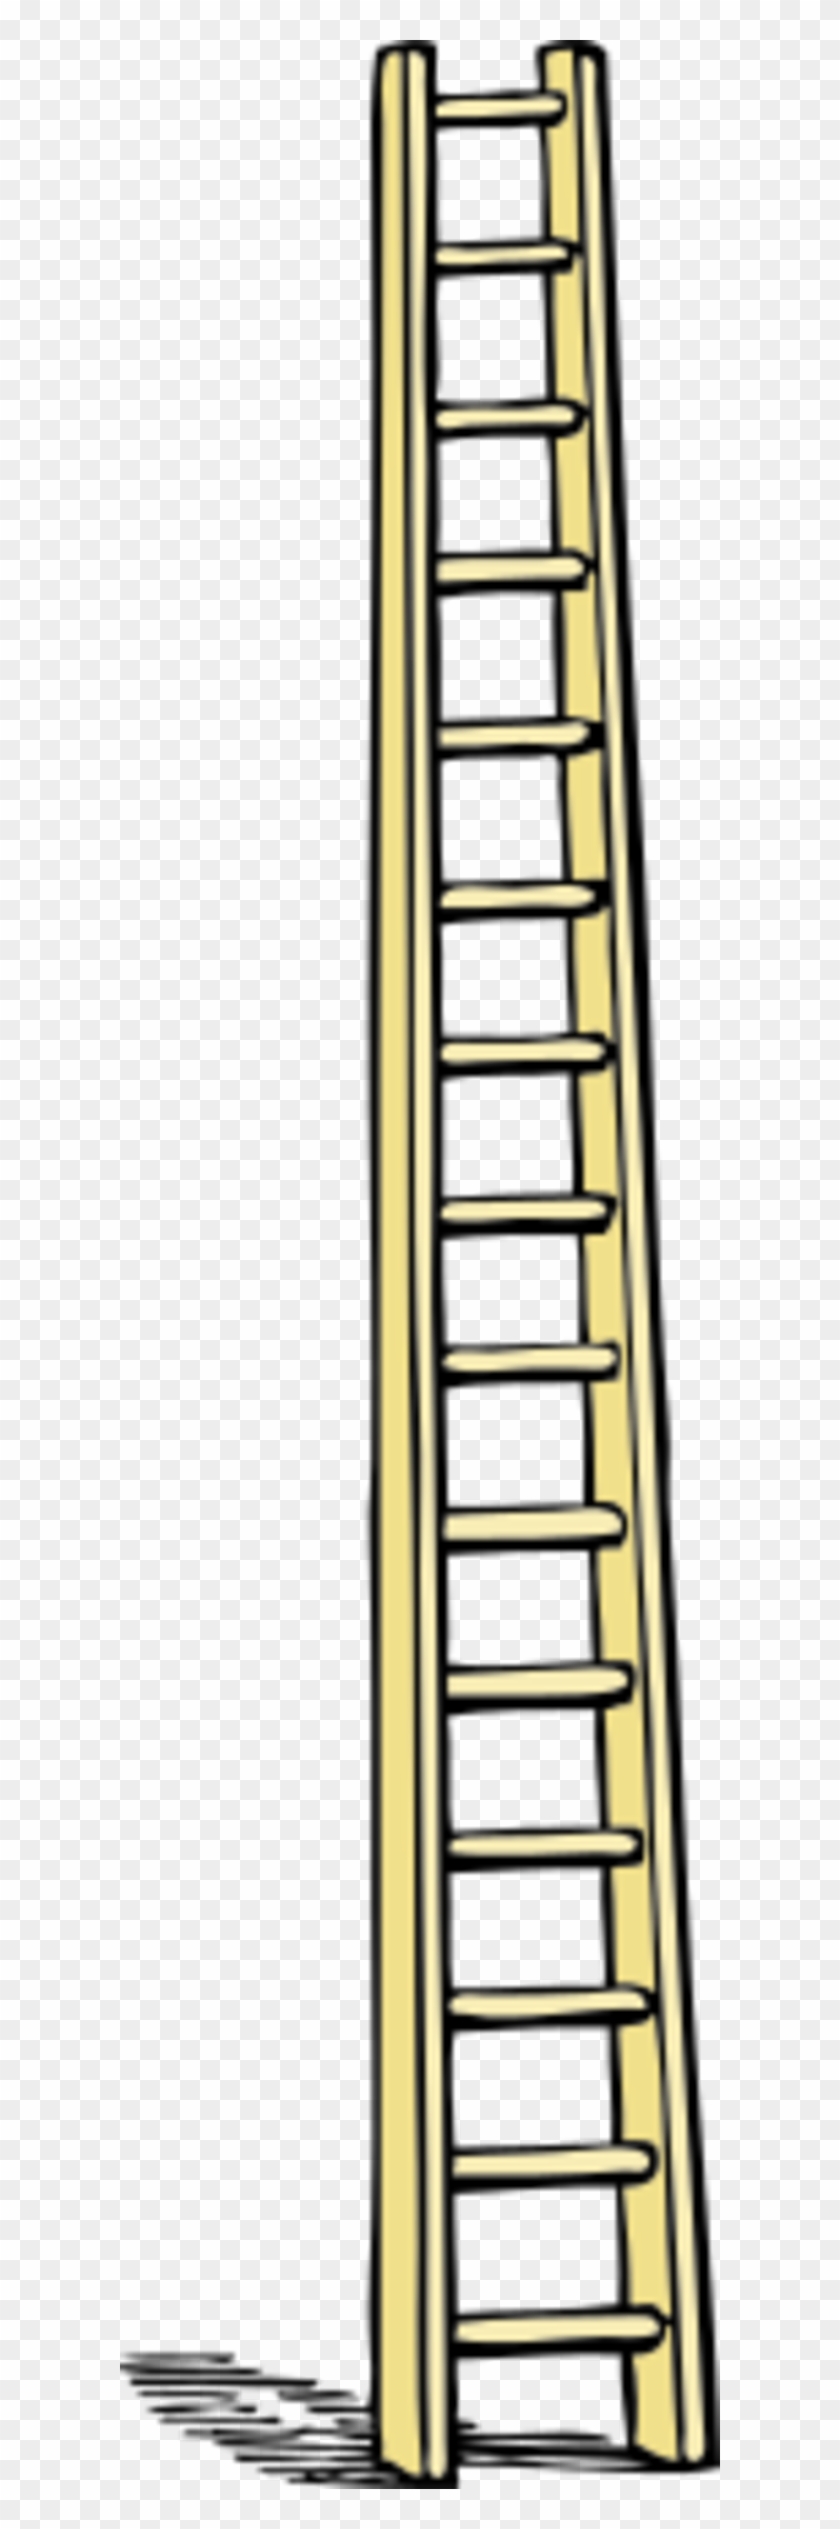 Tall Ladder Vector Clip Art - Ladder Clip Art #982089